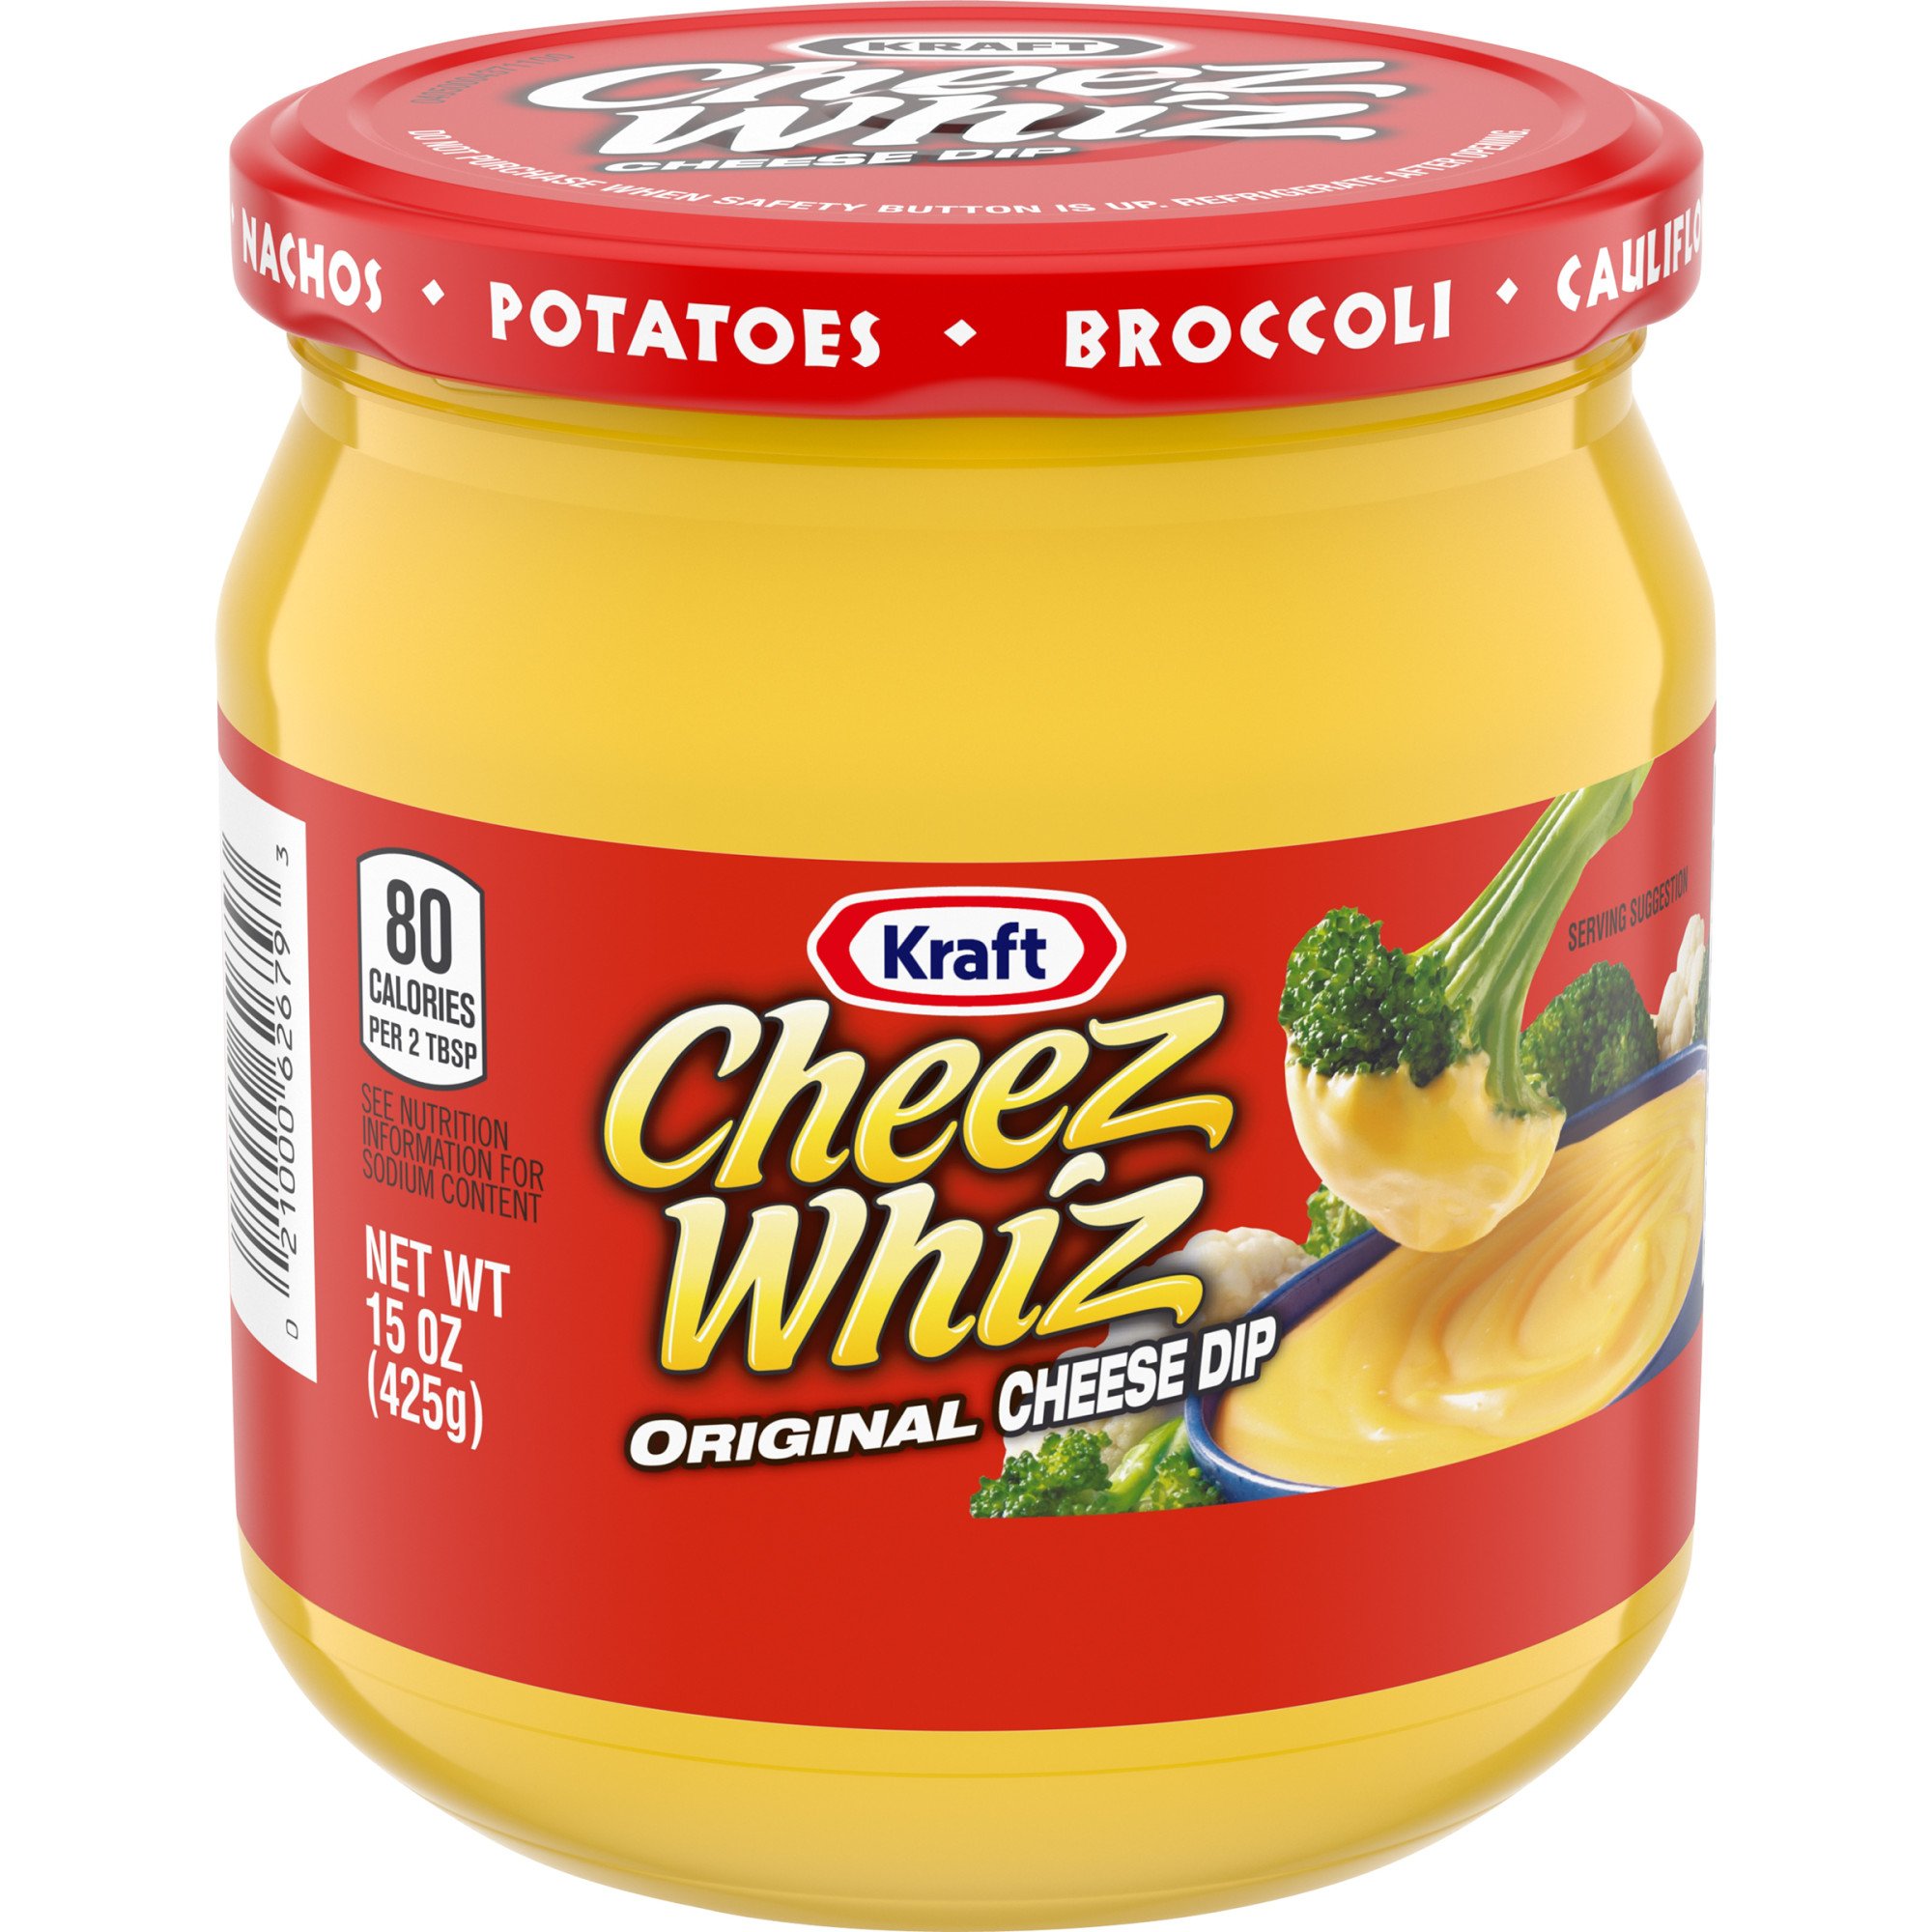 Kraft Cheez Whiz Original Cheese Dip Shop Salsa Dip At H E B